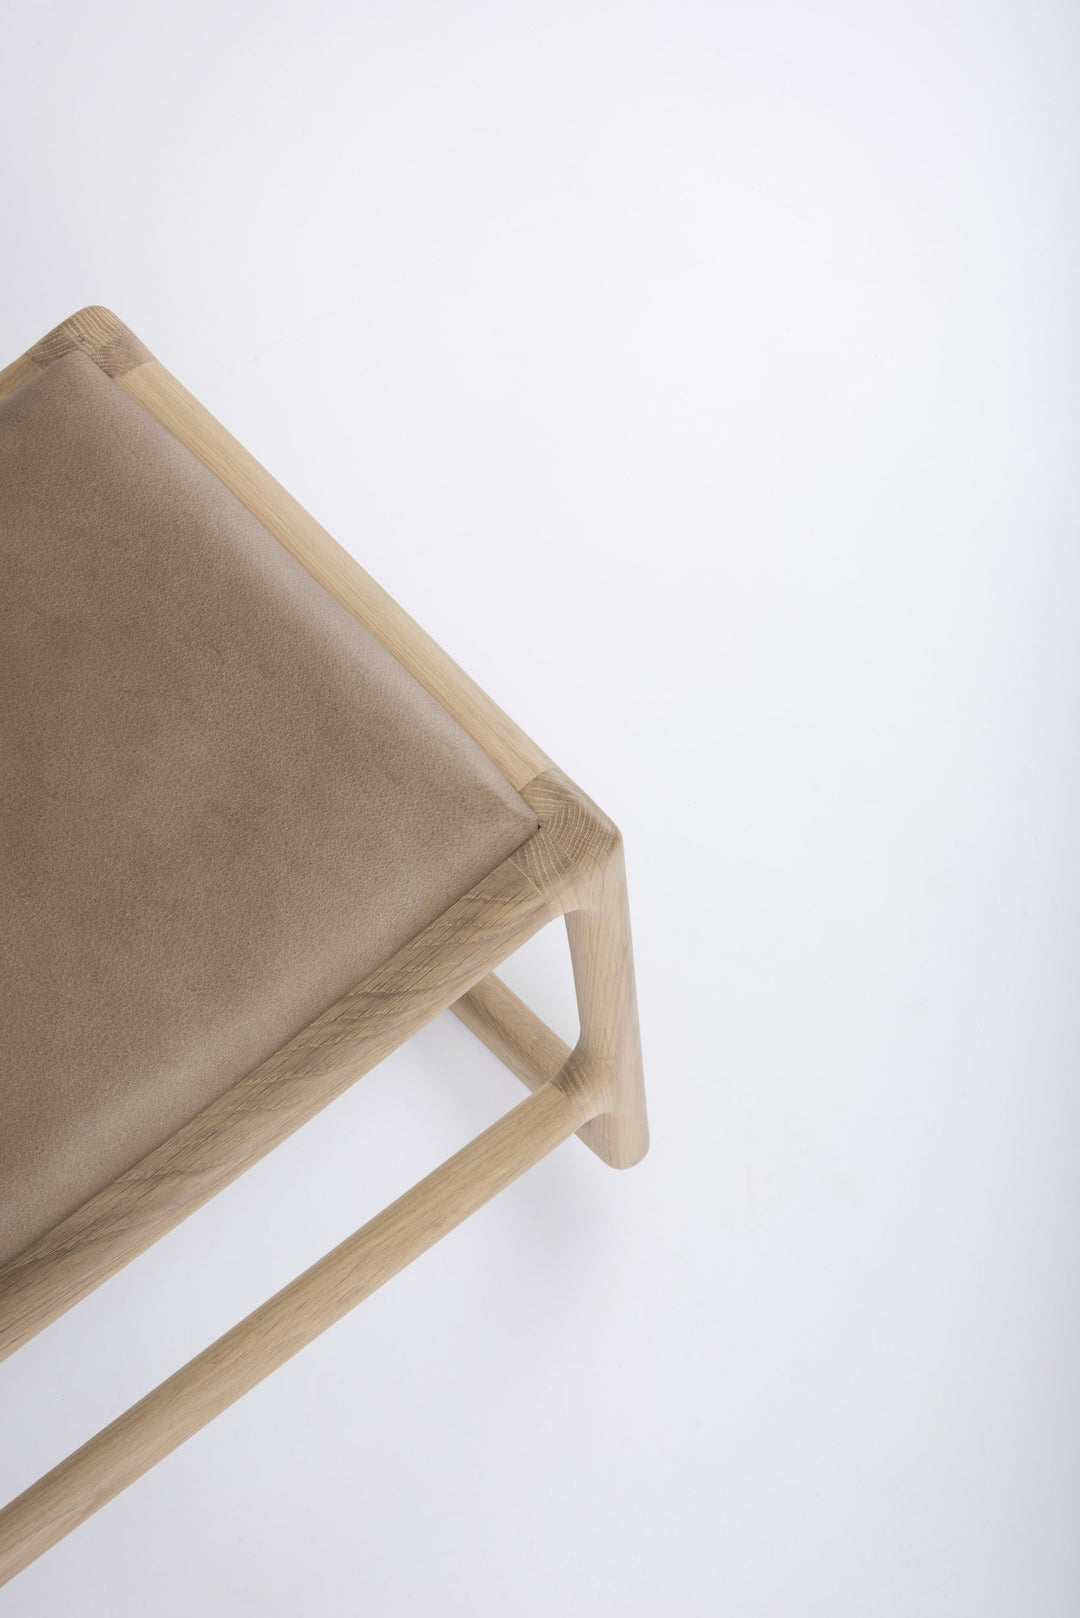 Gazzda Stuhl Eiche weiß 1015 / Stone 1436 Dedo Fußhocker für den Lounge Chair mit Lederbezug